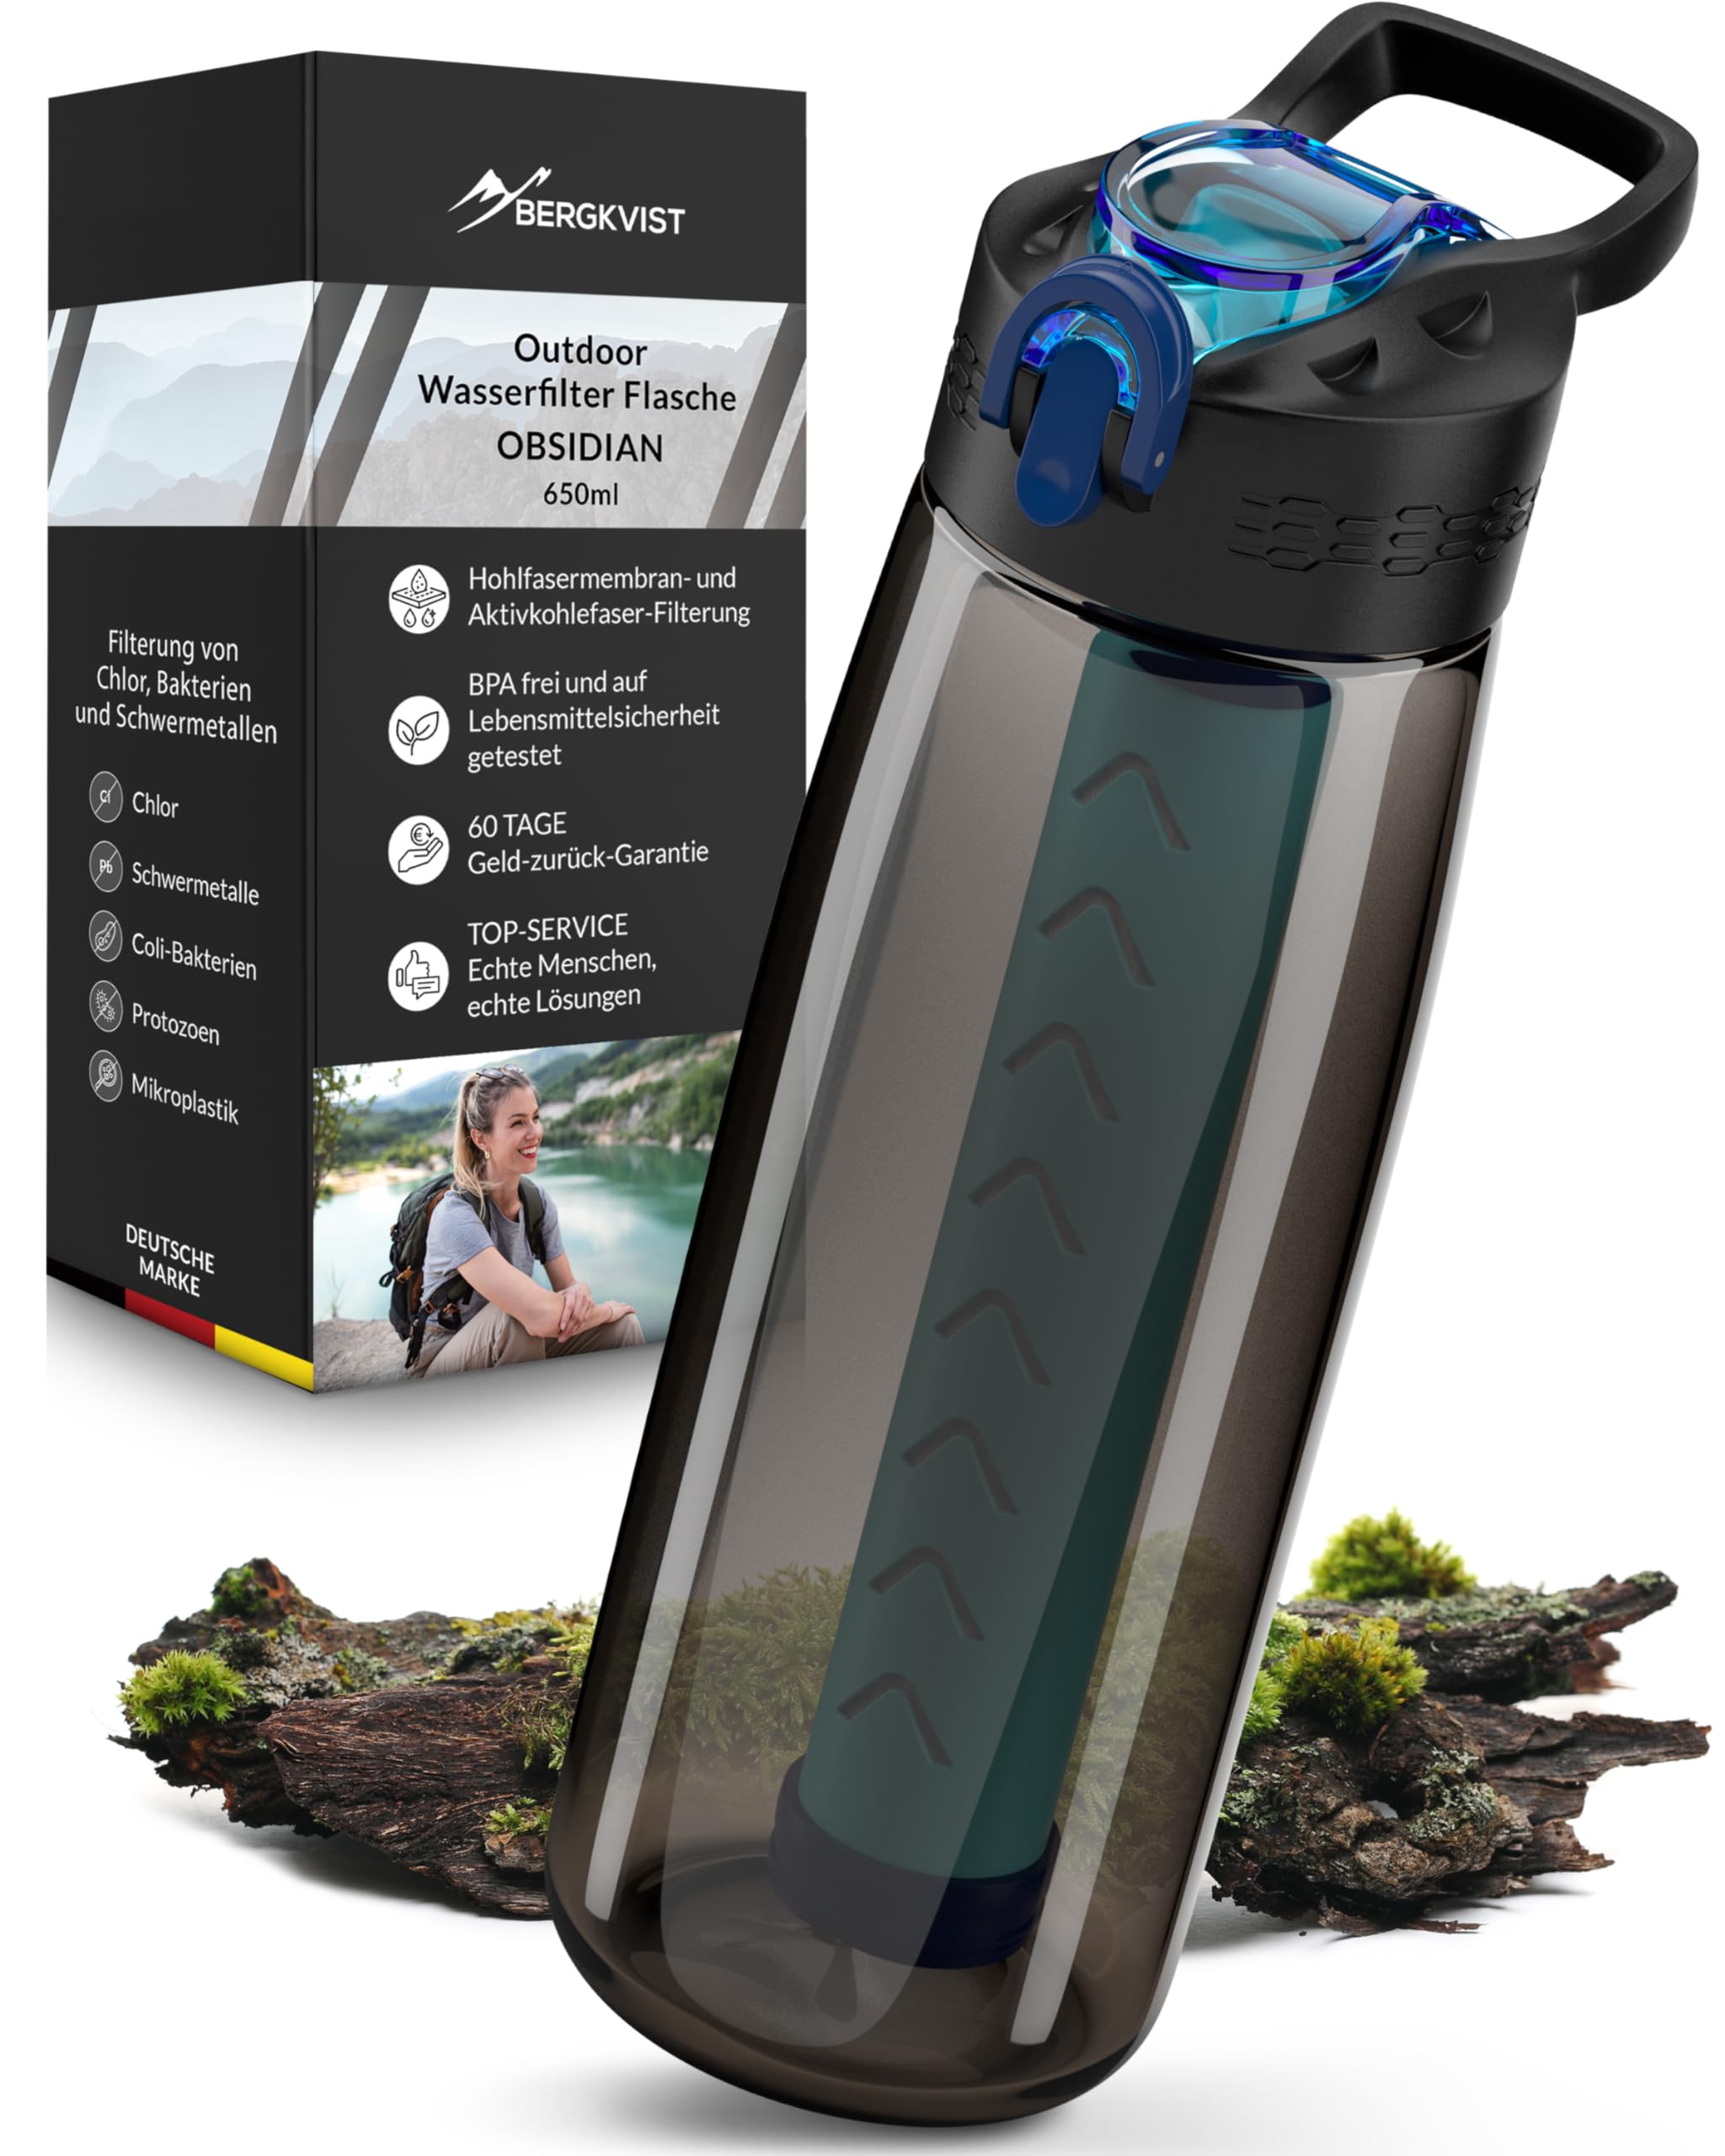 BERGKVIST® Outdoor Wasserfilter Flasche OBSIDIAN (650ml) mit Kompass - Trinkflasche mit Filter für sauberes Trinkwasser - Wasseraufbereitung für die Camping-, Prepper- & Survival-Ausrüstung